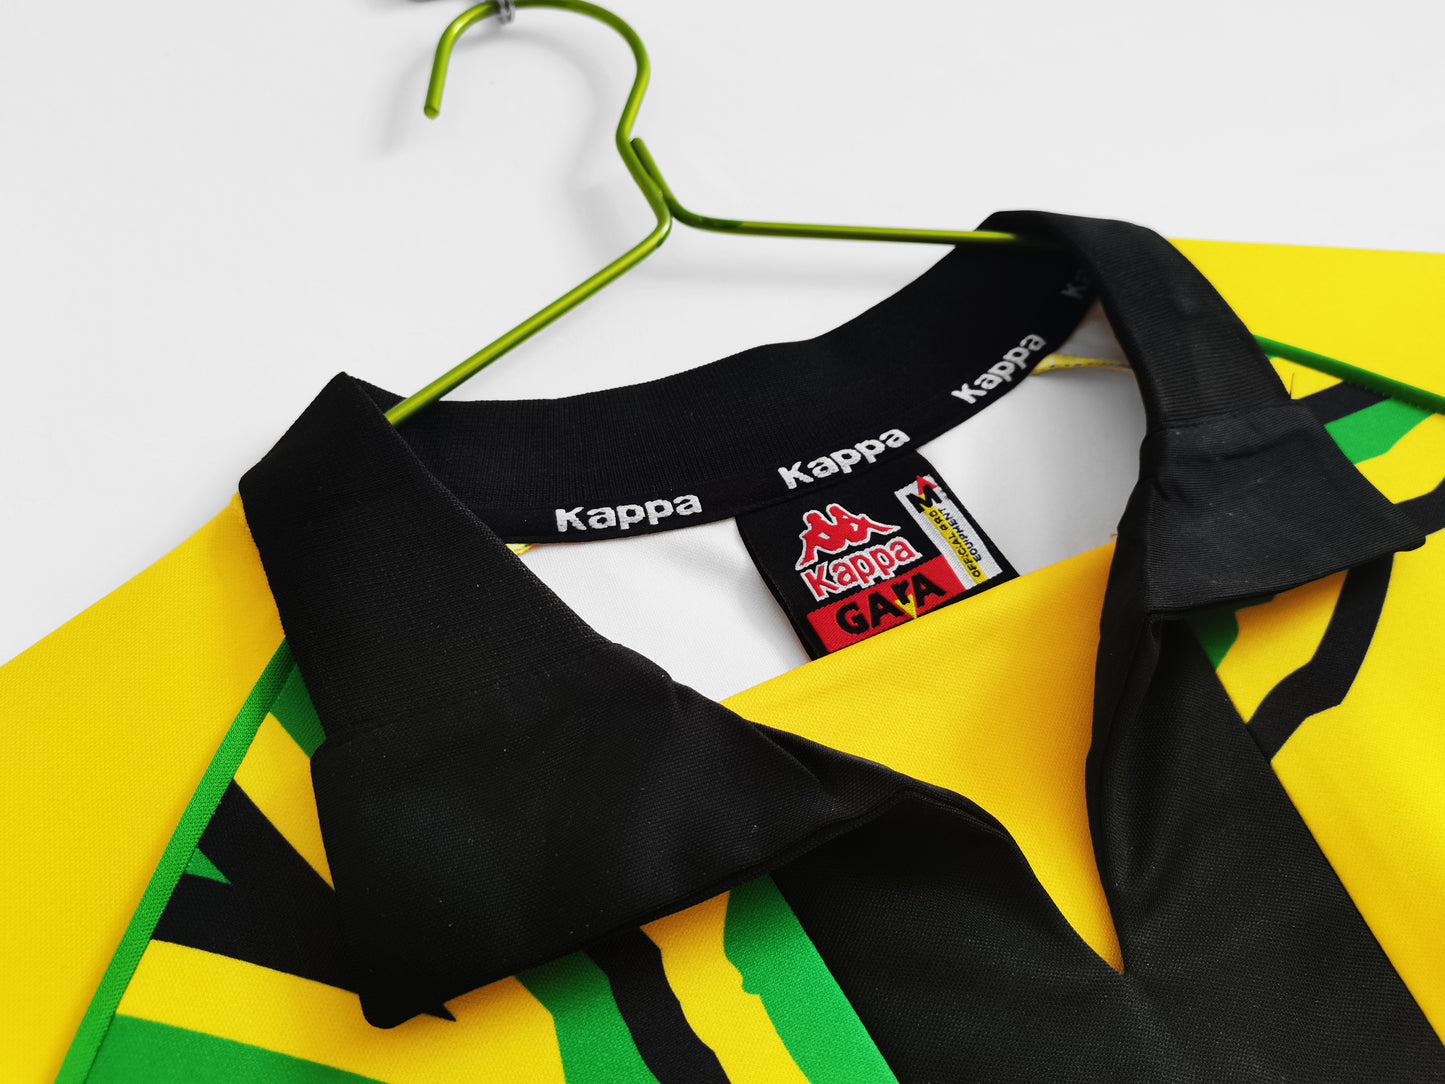 Jamaica National Team 1998 Home Retro Shirt